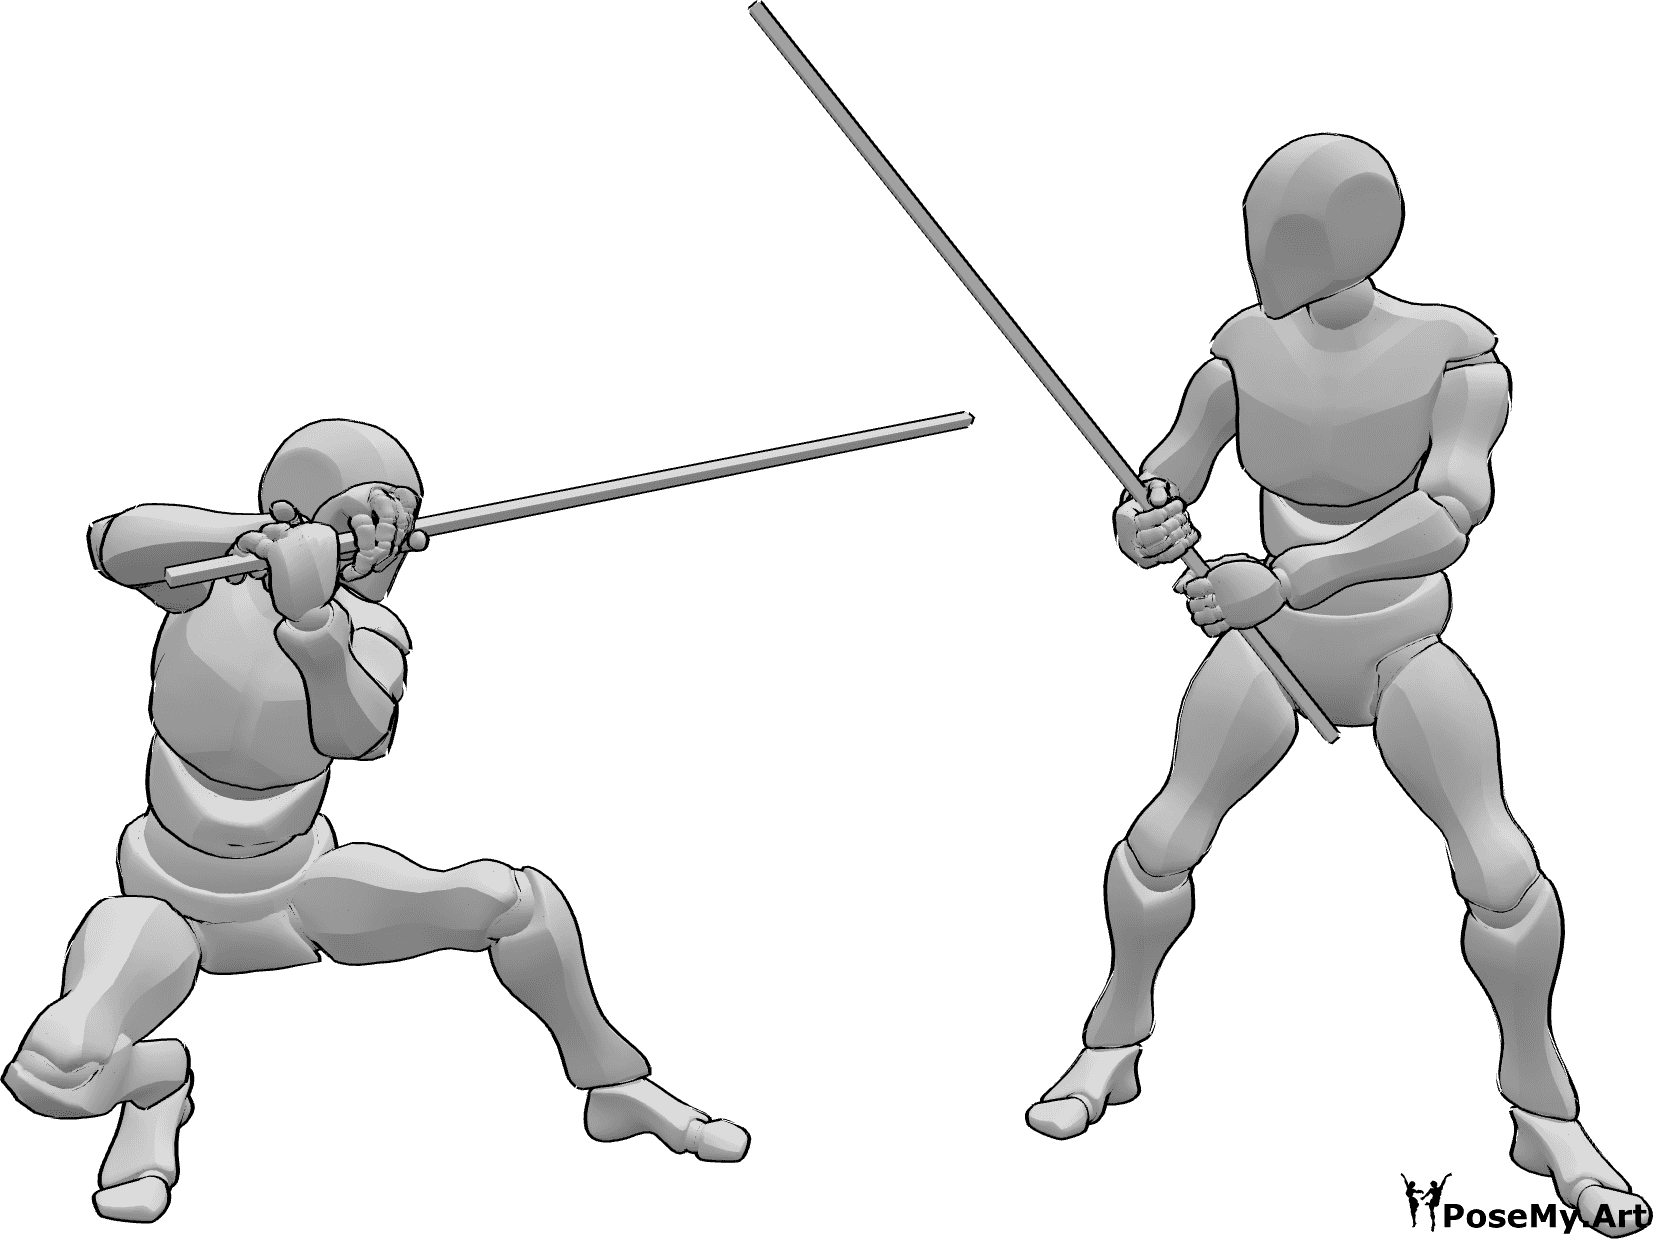 Referencia de poses- Los combatientes posan - Dos varones se pelean con báculos posan